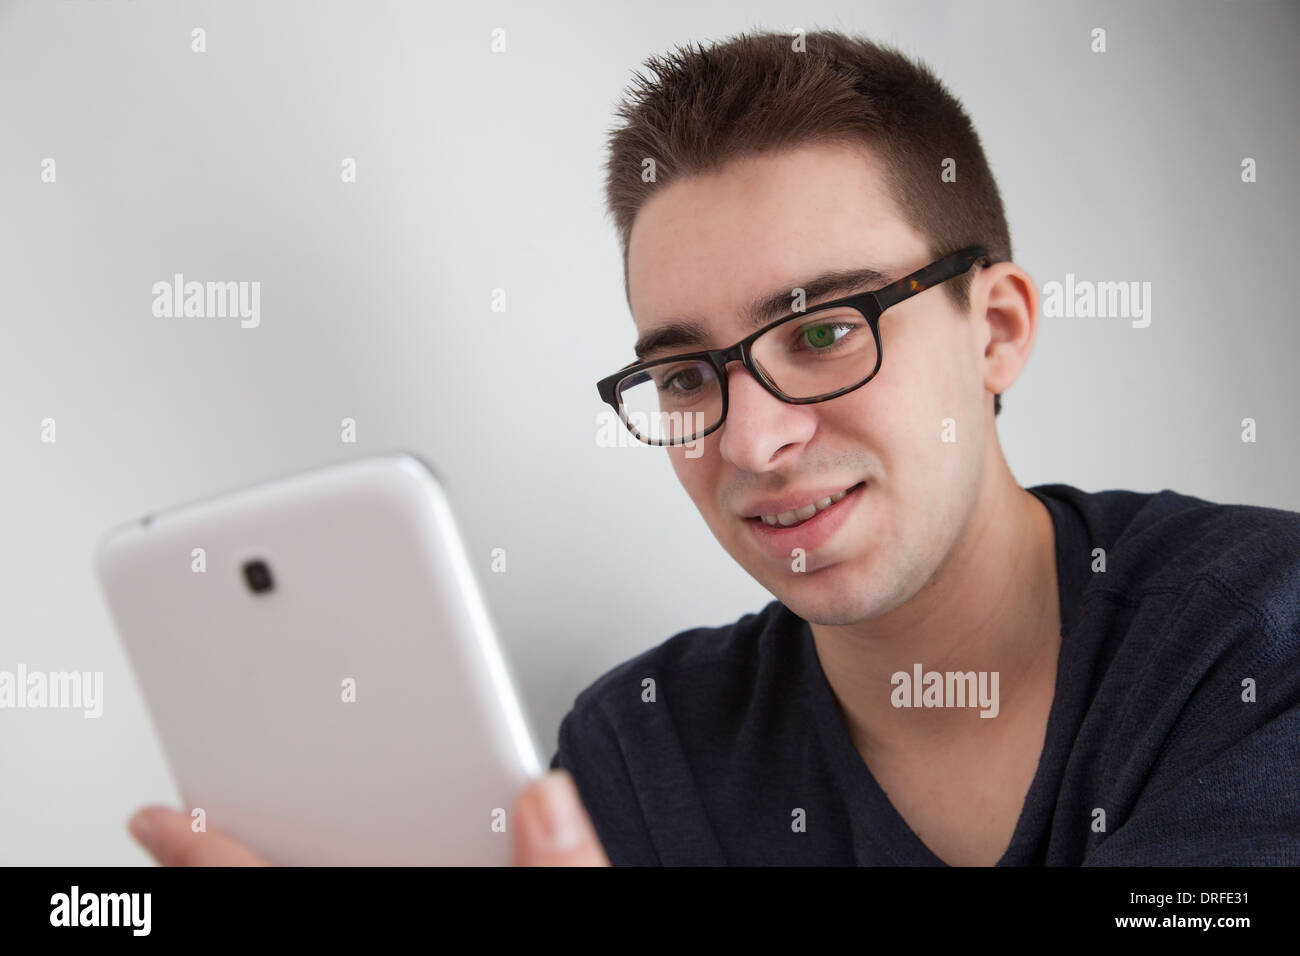 Guten aussehenden jungen Mann mit Brille, halten Sie eine weiße digitale Tablette lächelnd lächelnd. Stockfoto